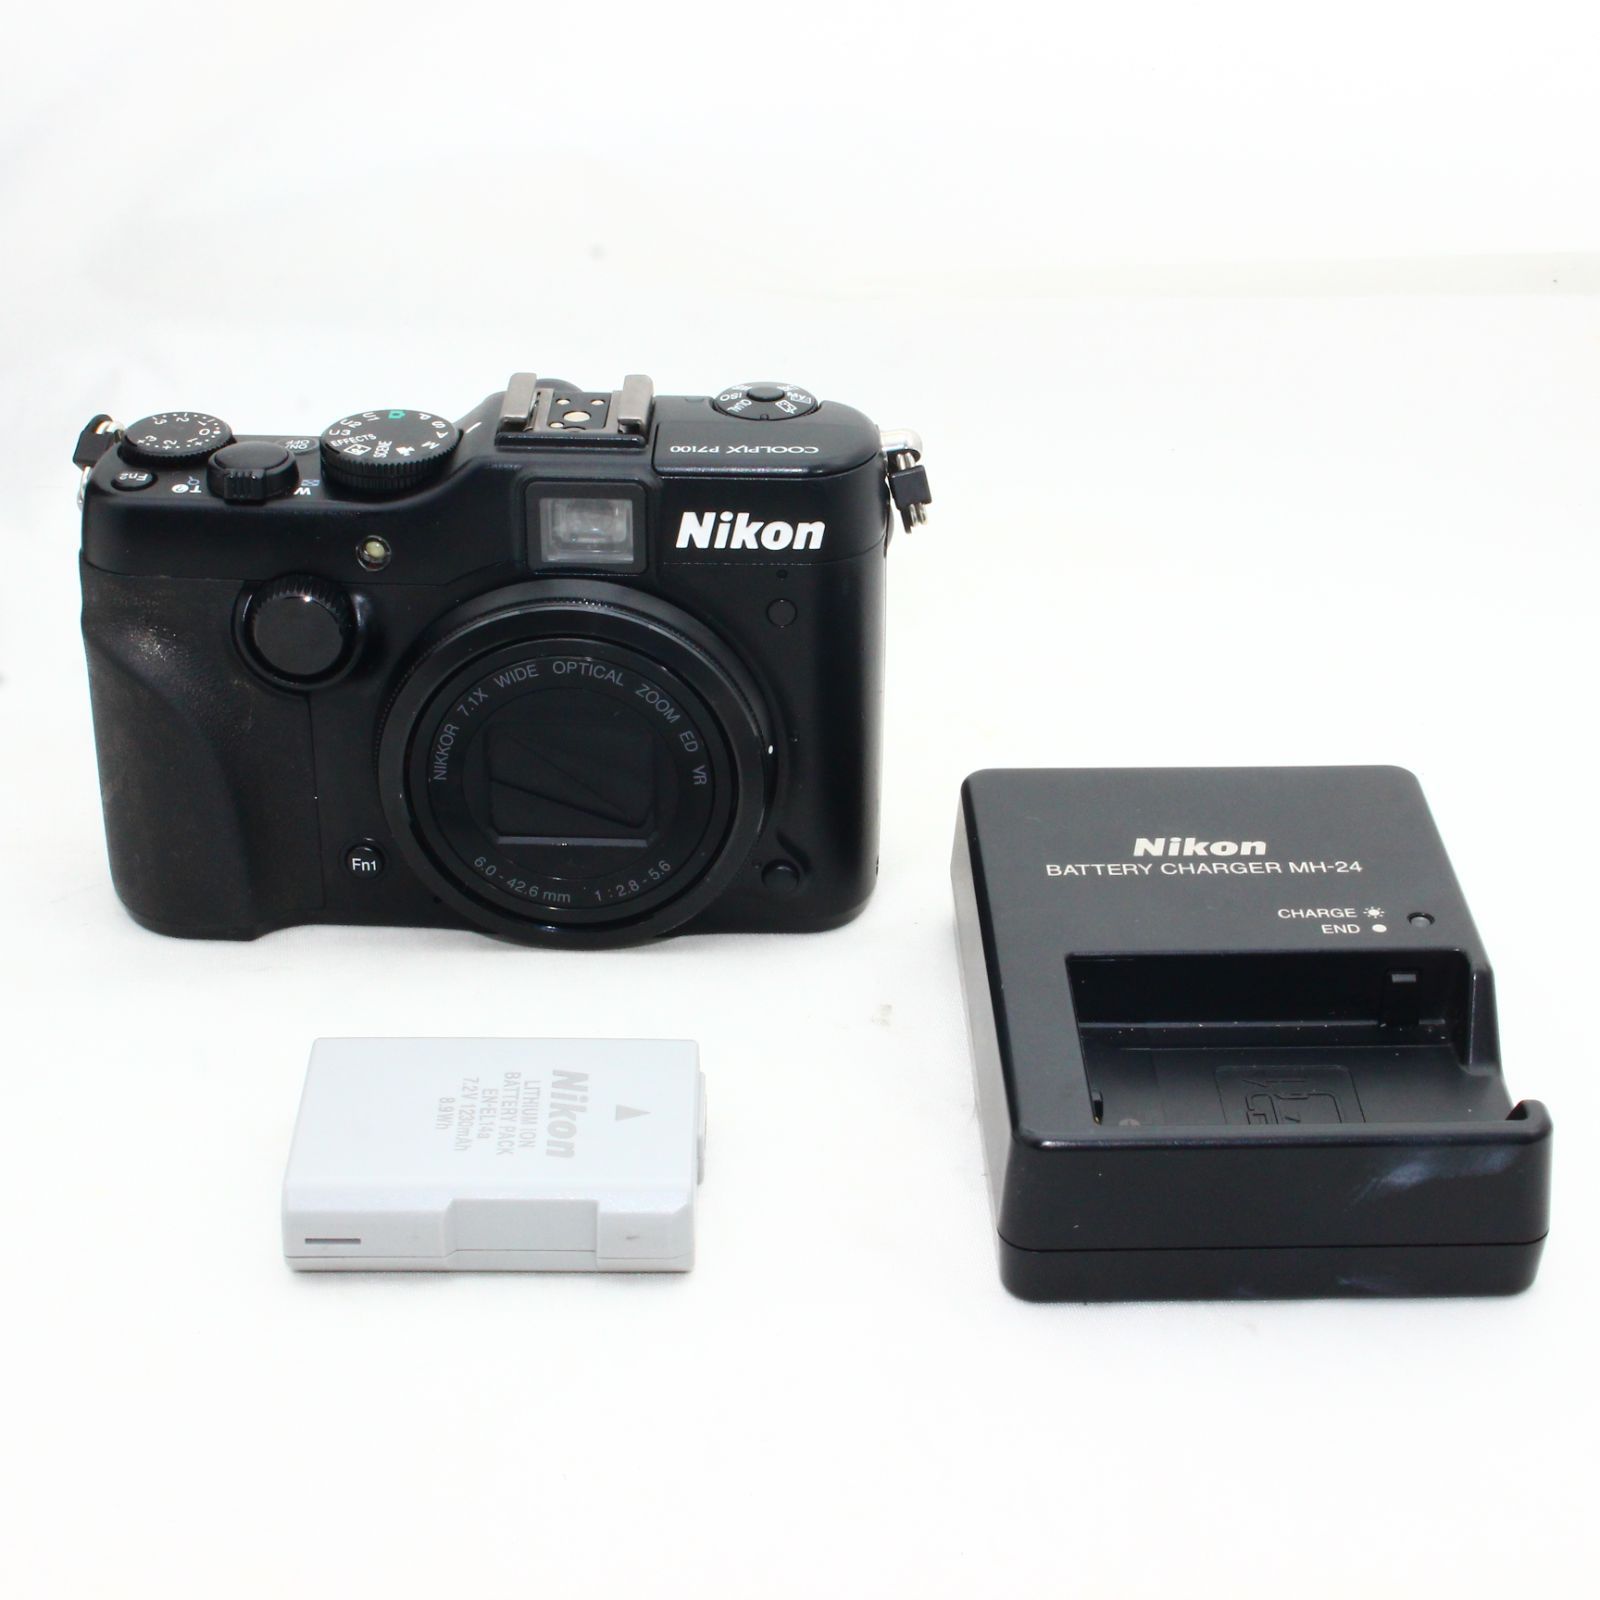 Nikon デジタルカメラ COOLPIX (クールピクス) P7100 ブラック P7100BK